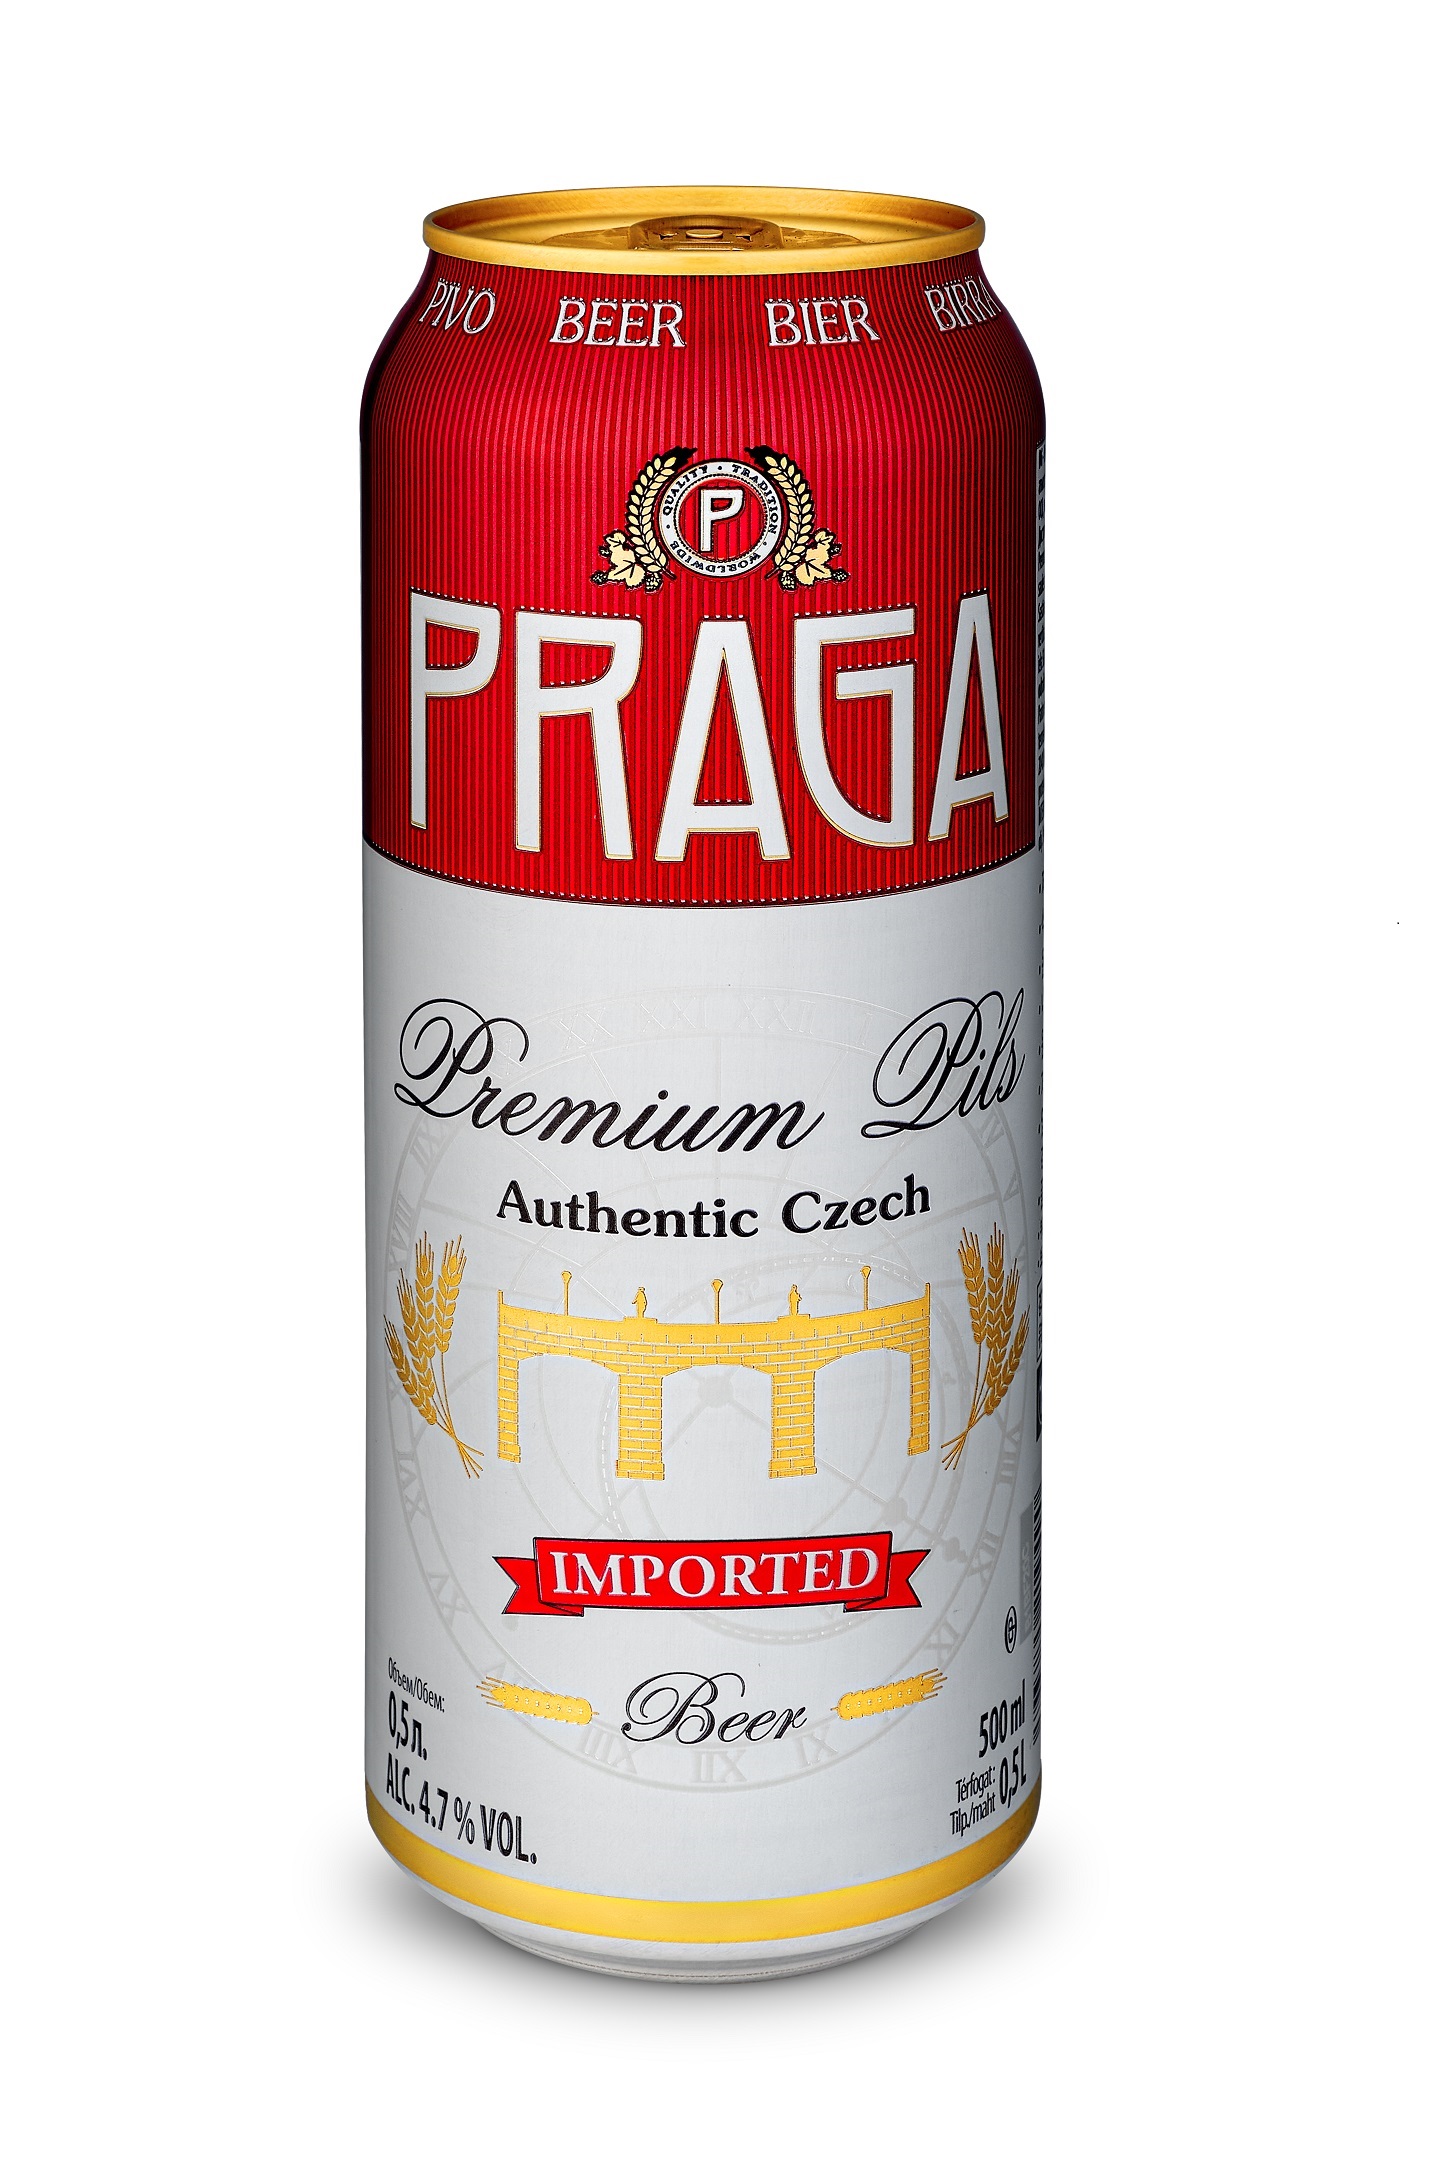 捷克进口PRAGA PREMIUM高级精酿琥珀